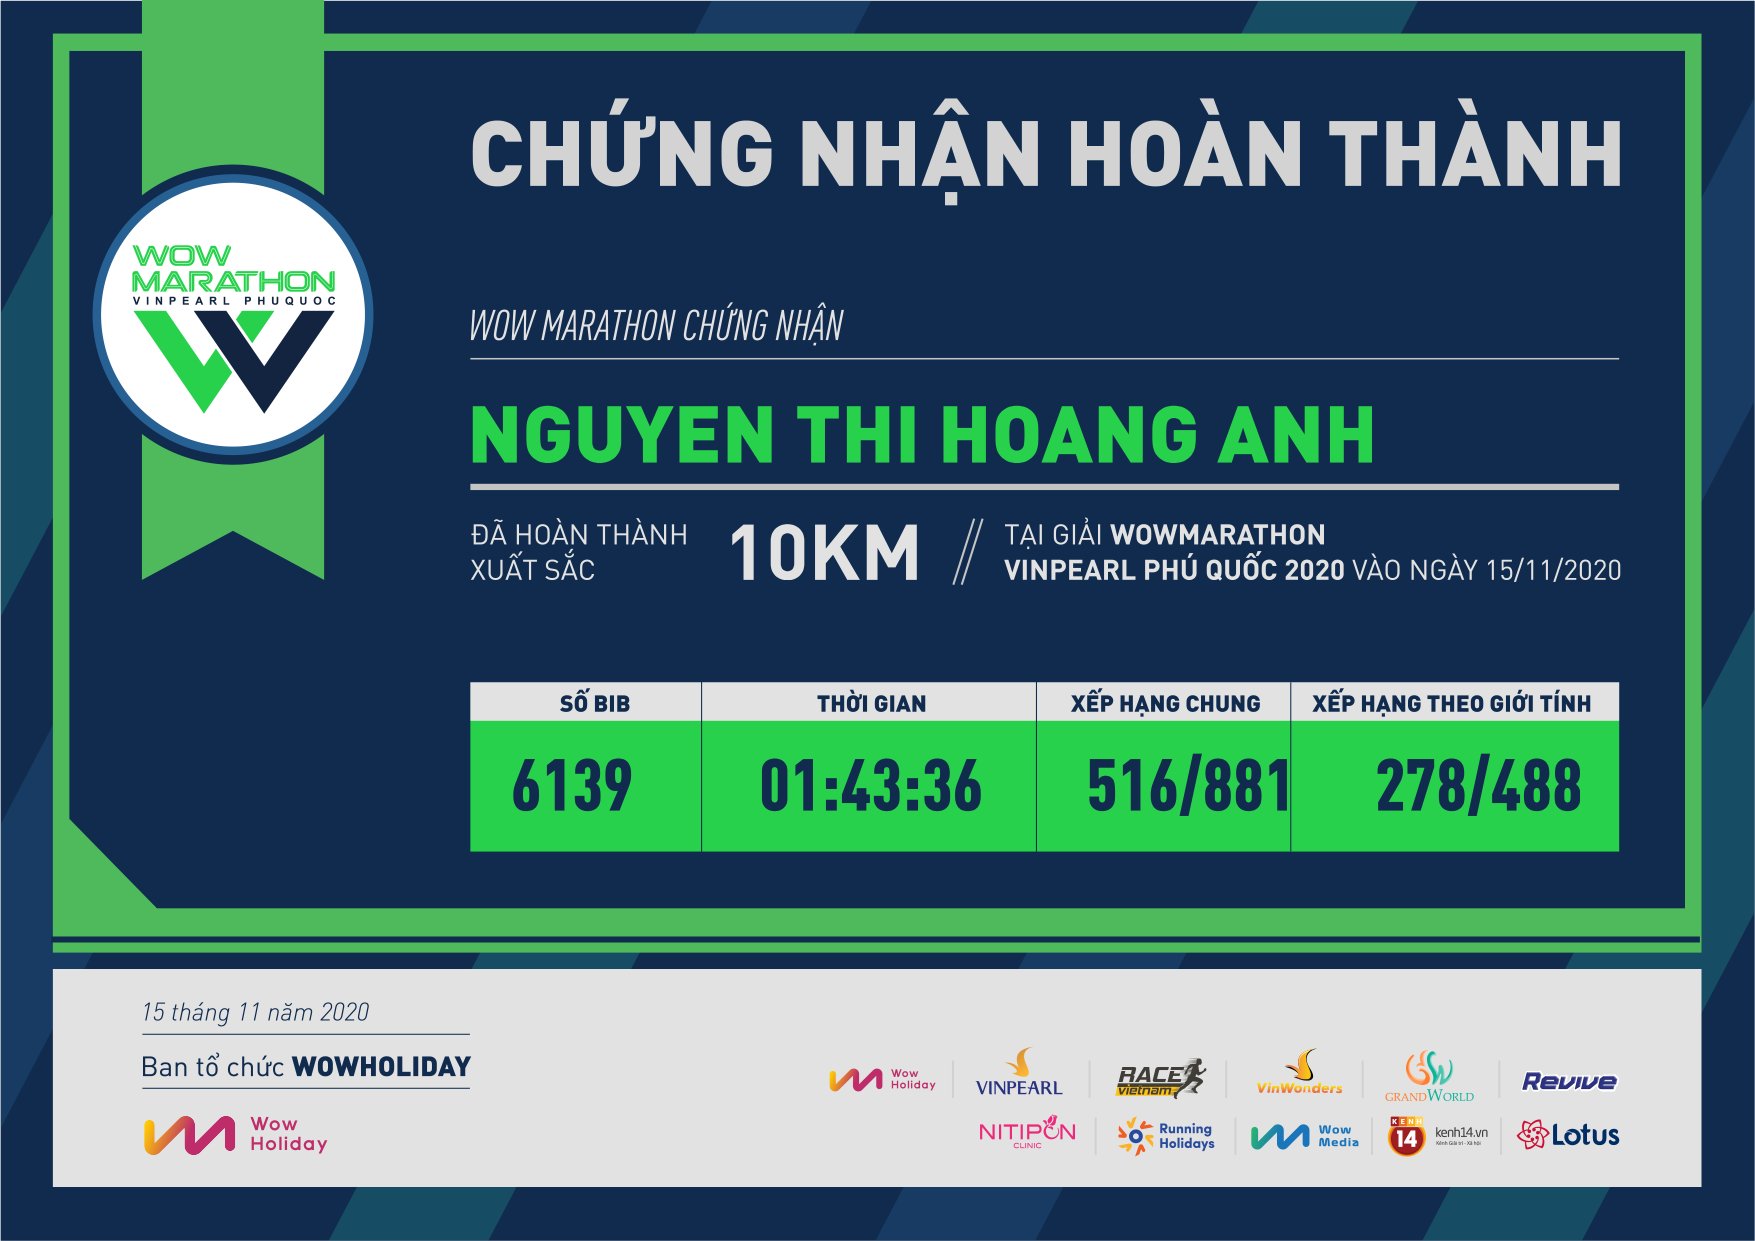 6139 - Nguyen Thi Hoang Anh